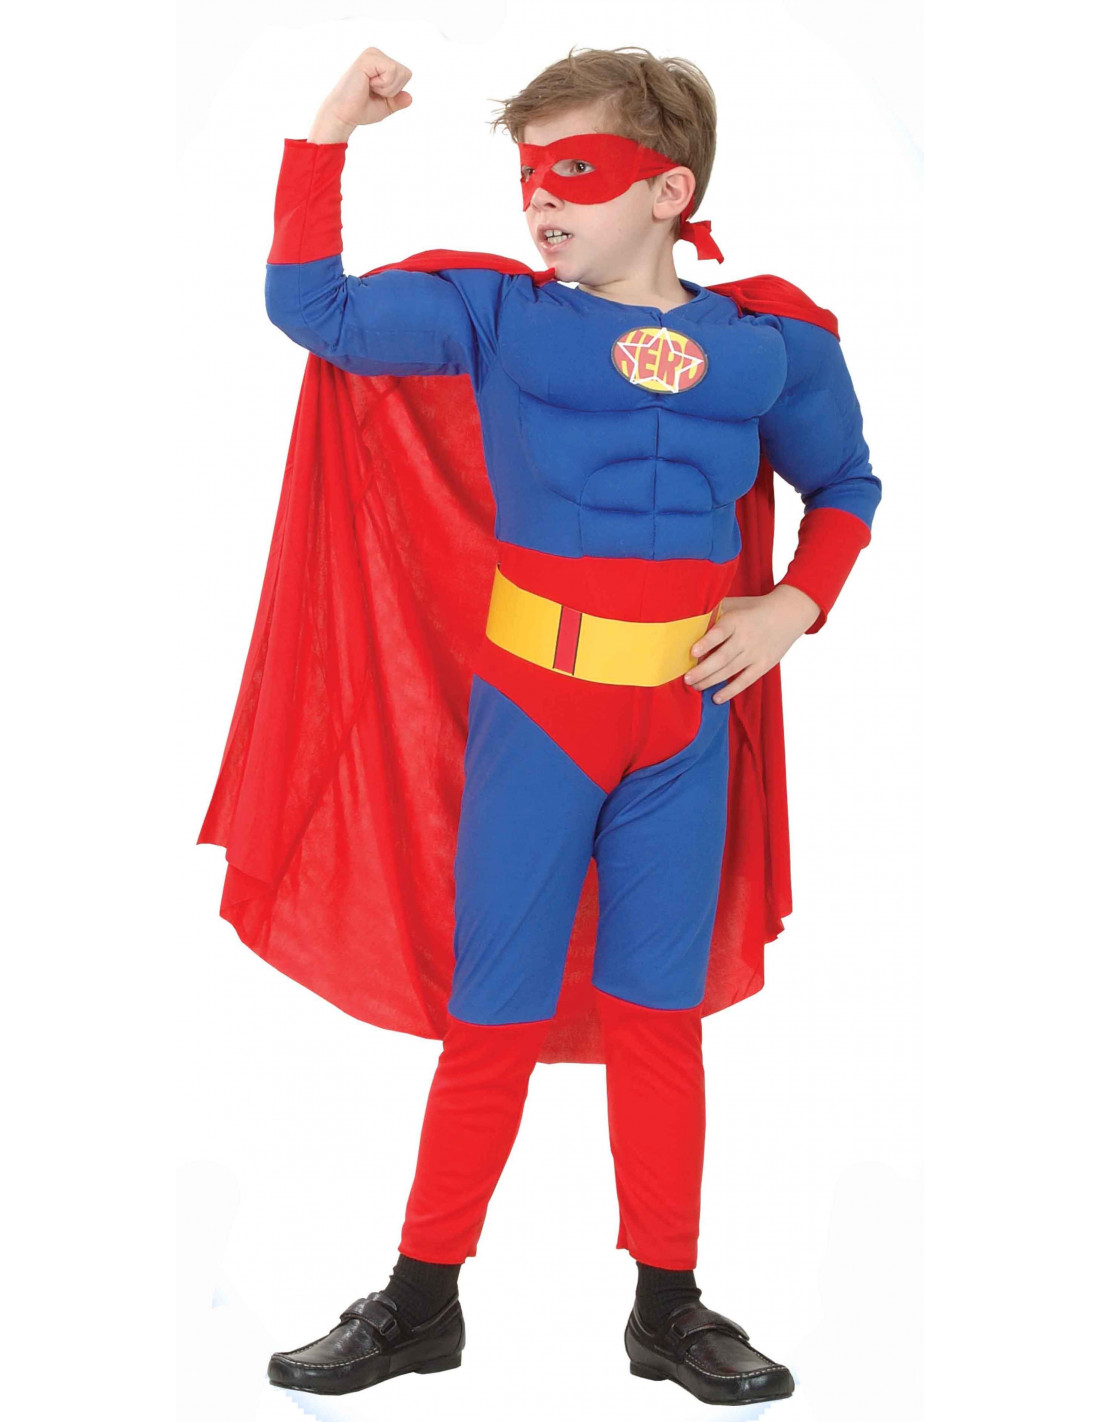 Capas de Superhéroes baratas para niños. Comprar online